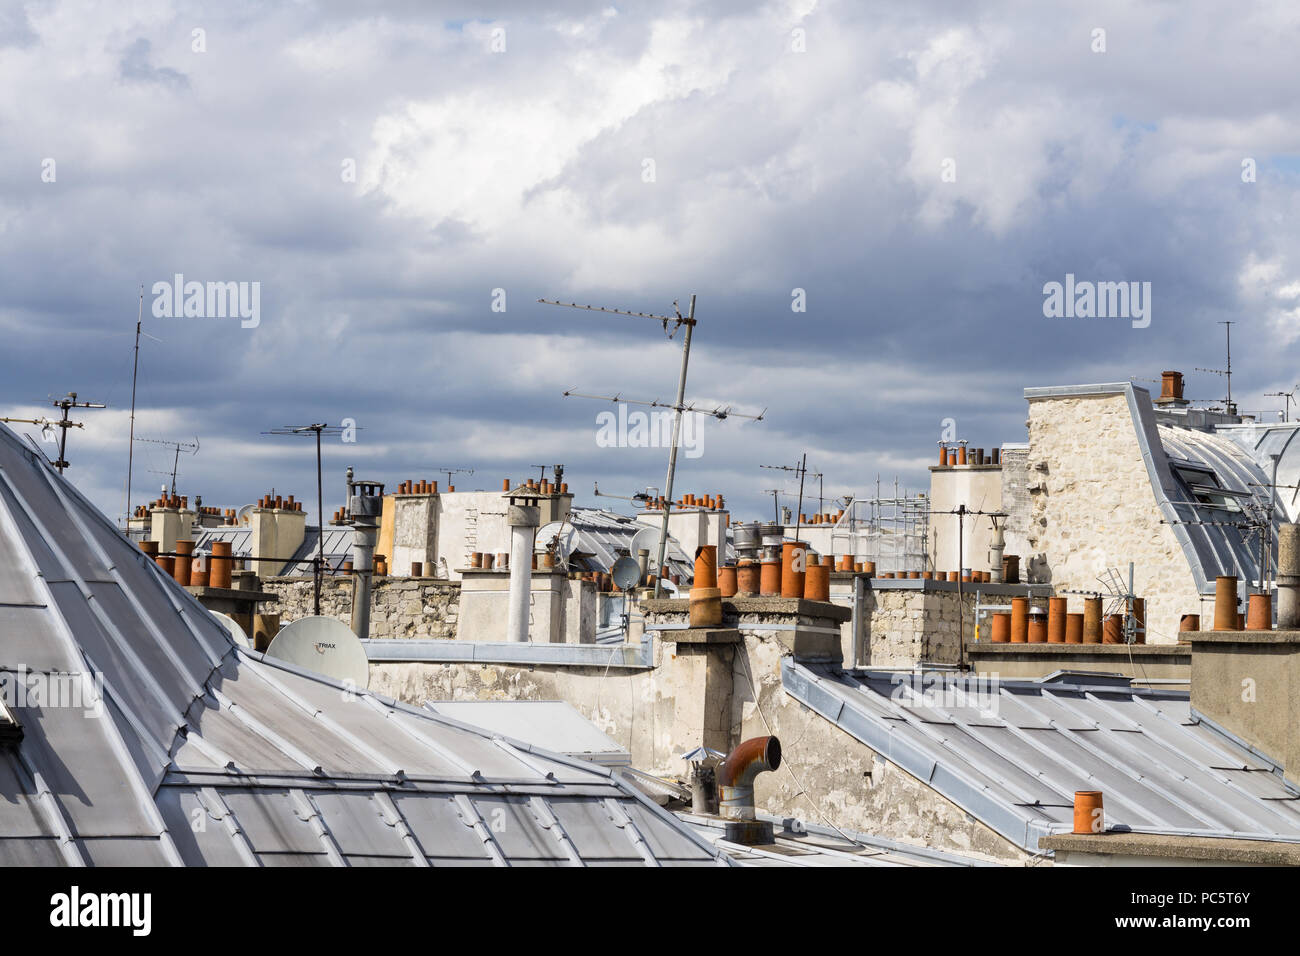 Toits de Paris - vue typique des toits de Paris d'après-midi sous un ciel couvert, la France, l'Europe. Banque D'Images